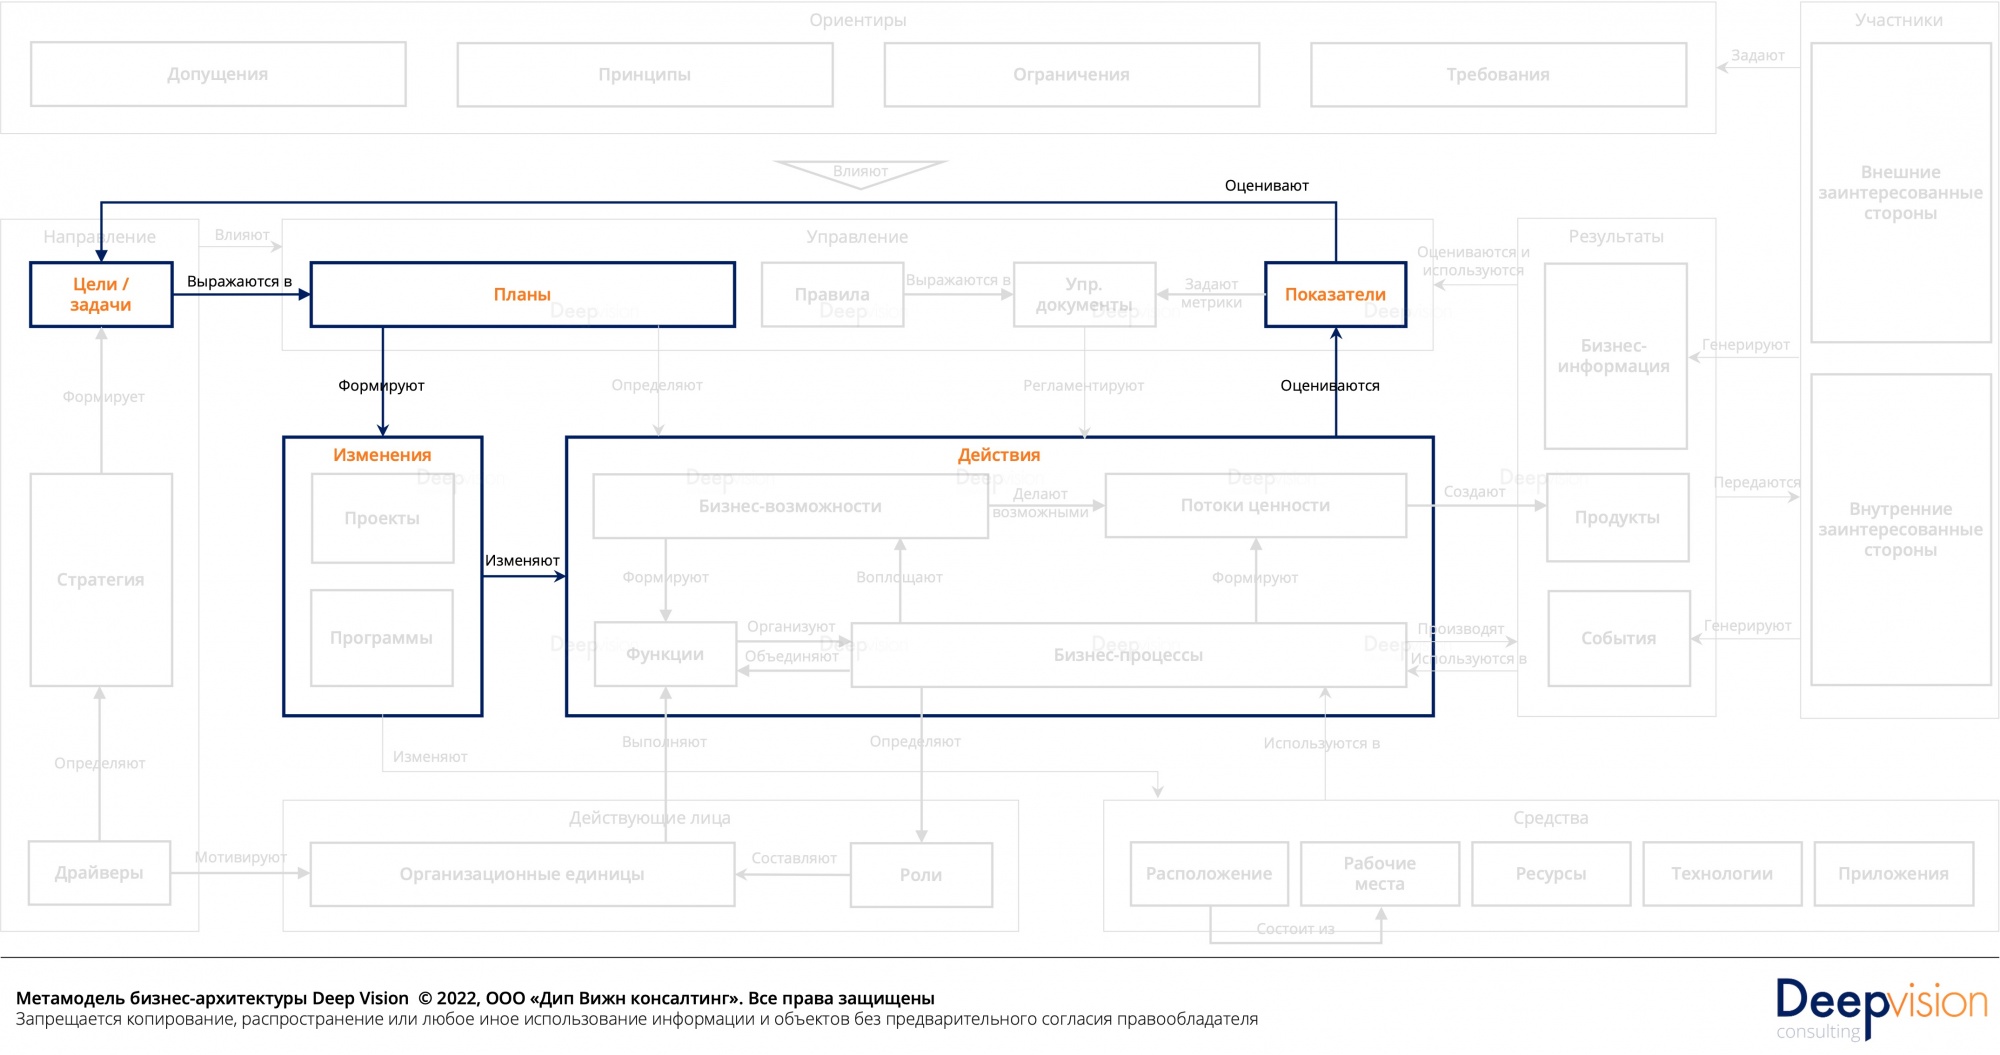 Метамодель бизнес-архитектуры - контур изменении.jpg